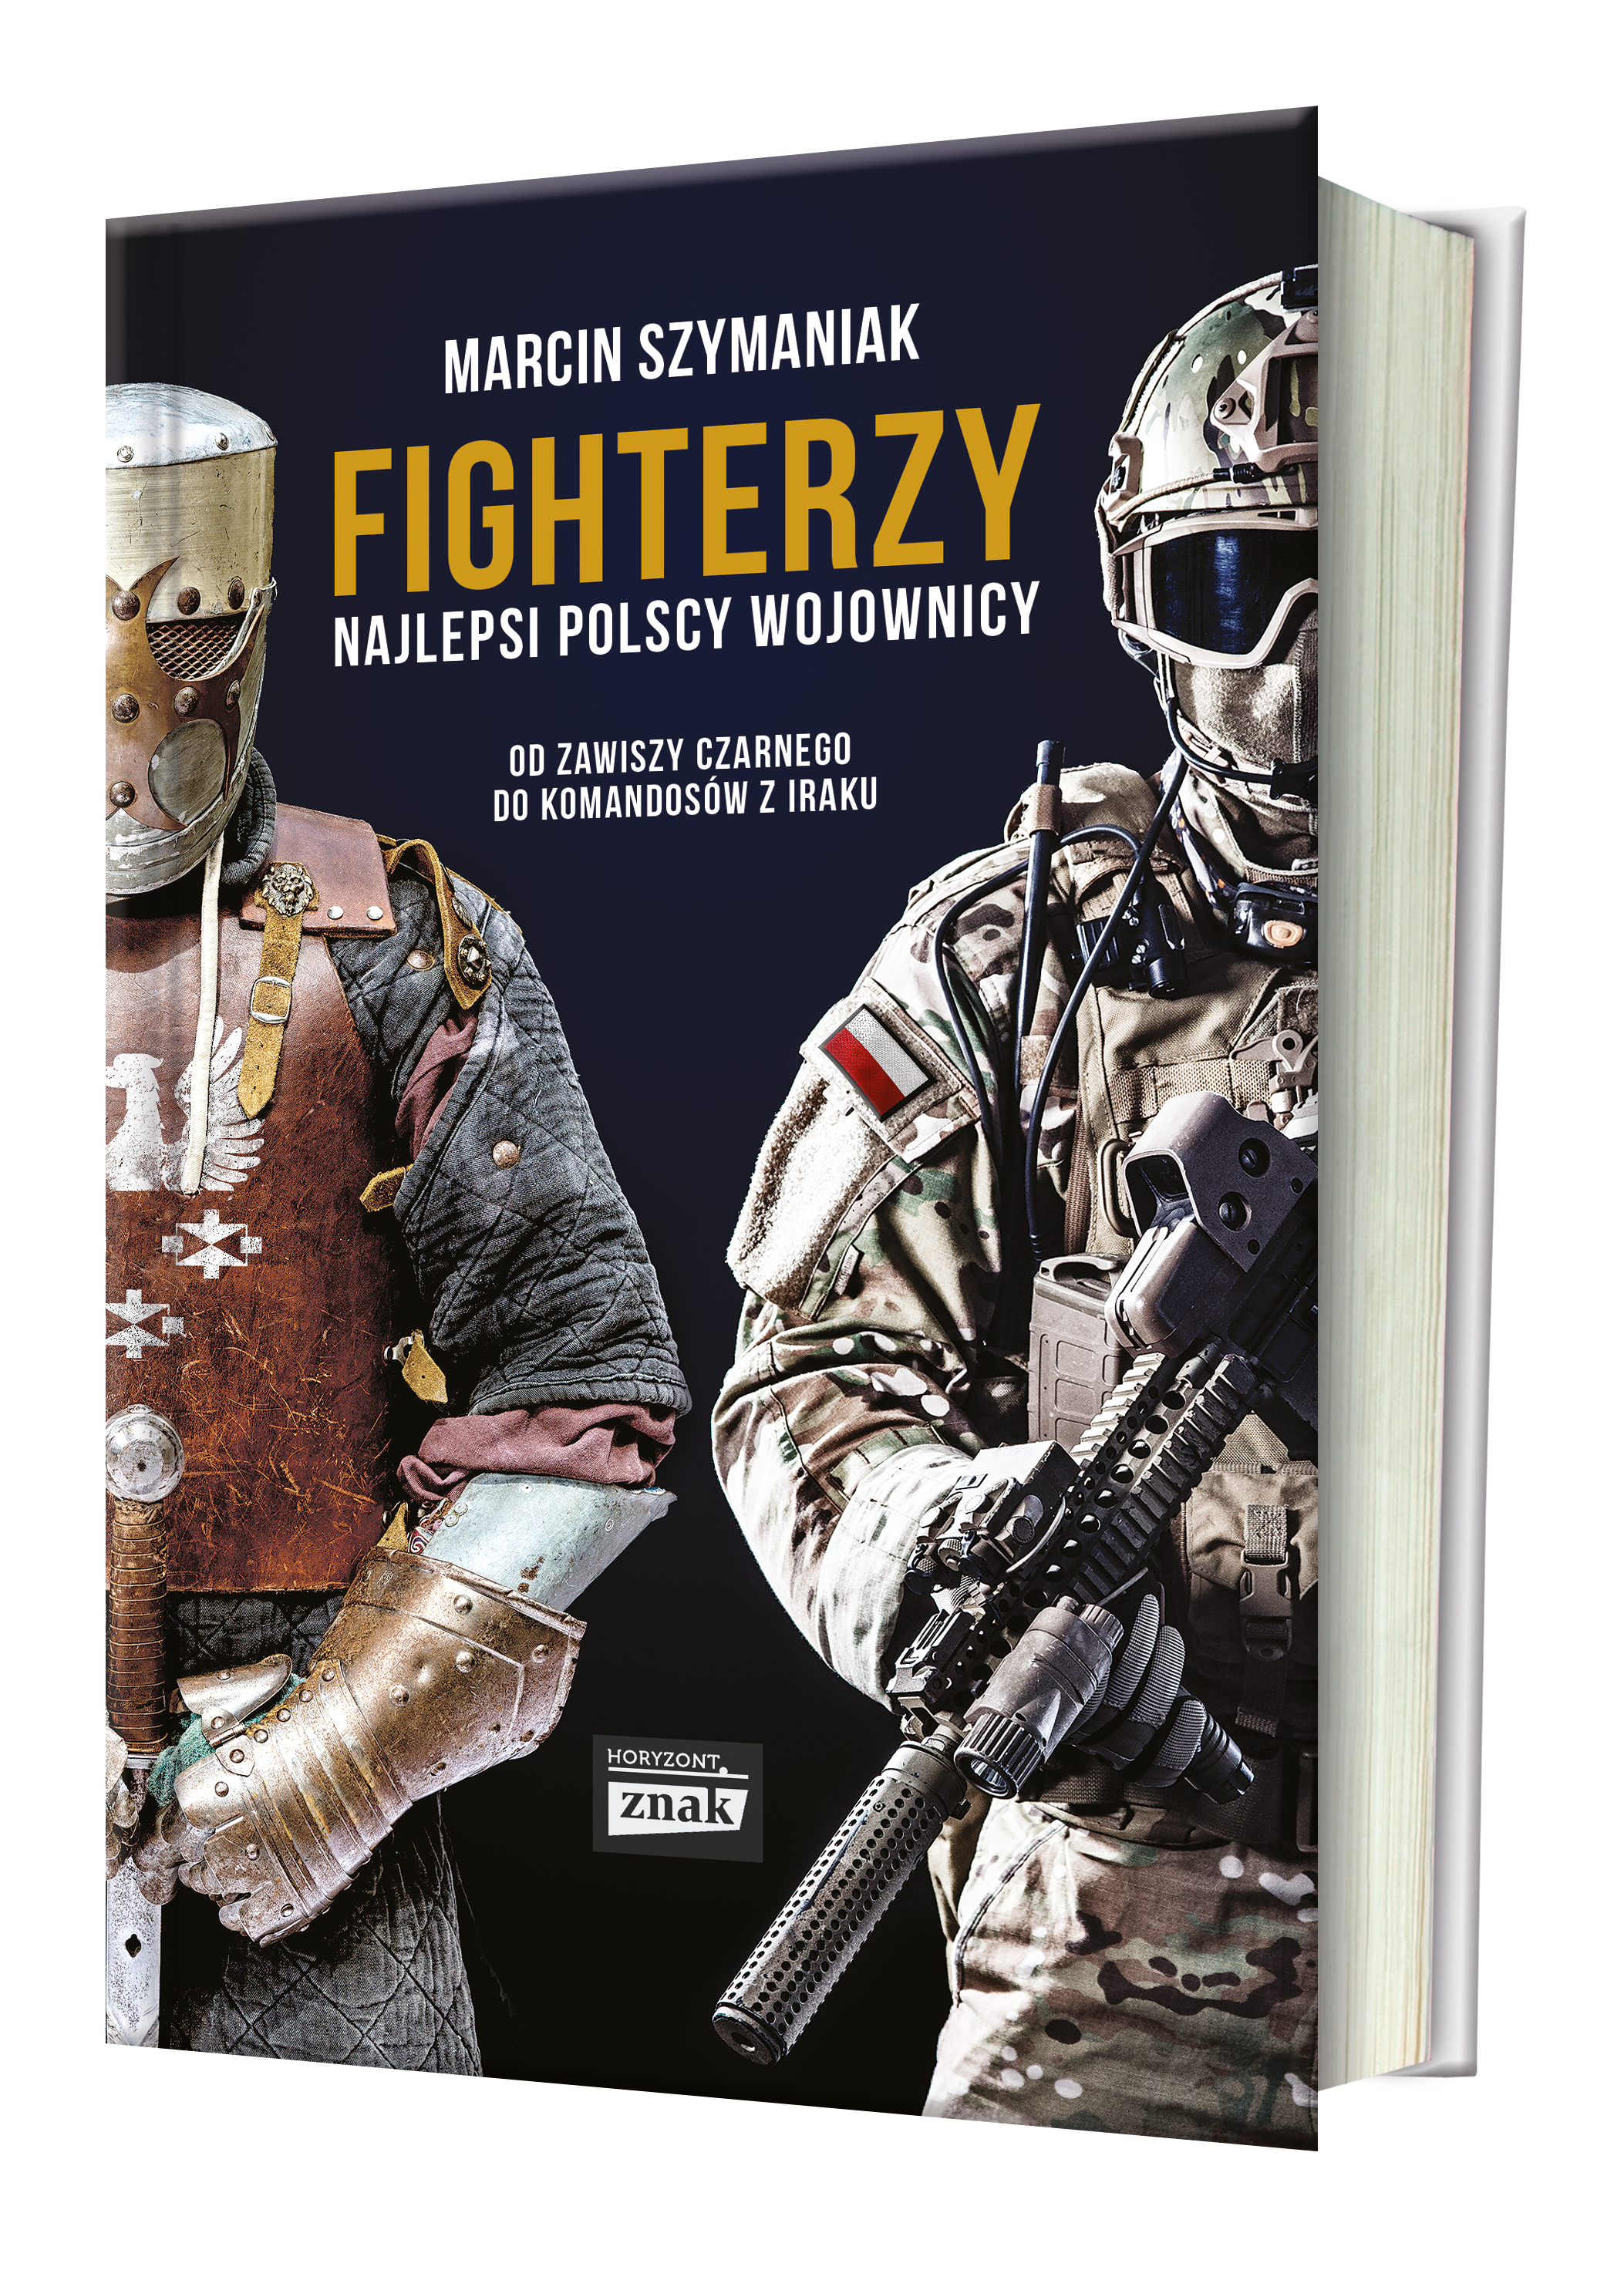 Tekst powstał w oparciu o literaturę i materiały zebrane przez autora podczas prac nad książką pt. "Fighterzy. Najlepsi polscy wojownicy" (Znak Horyzont 2017).